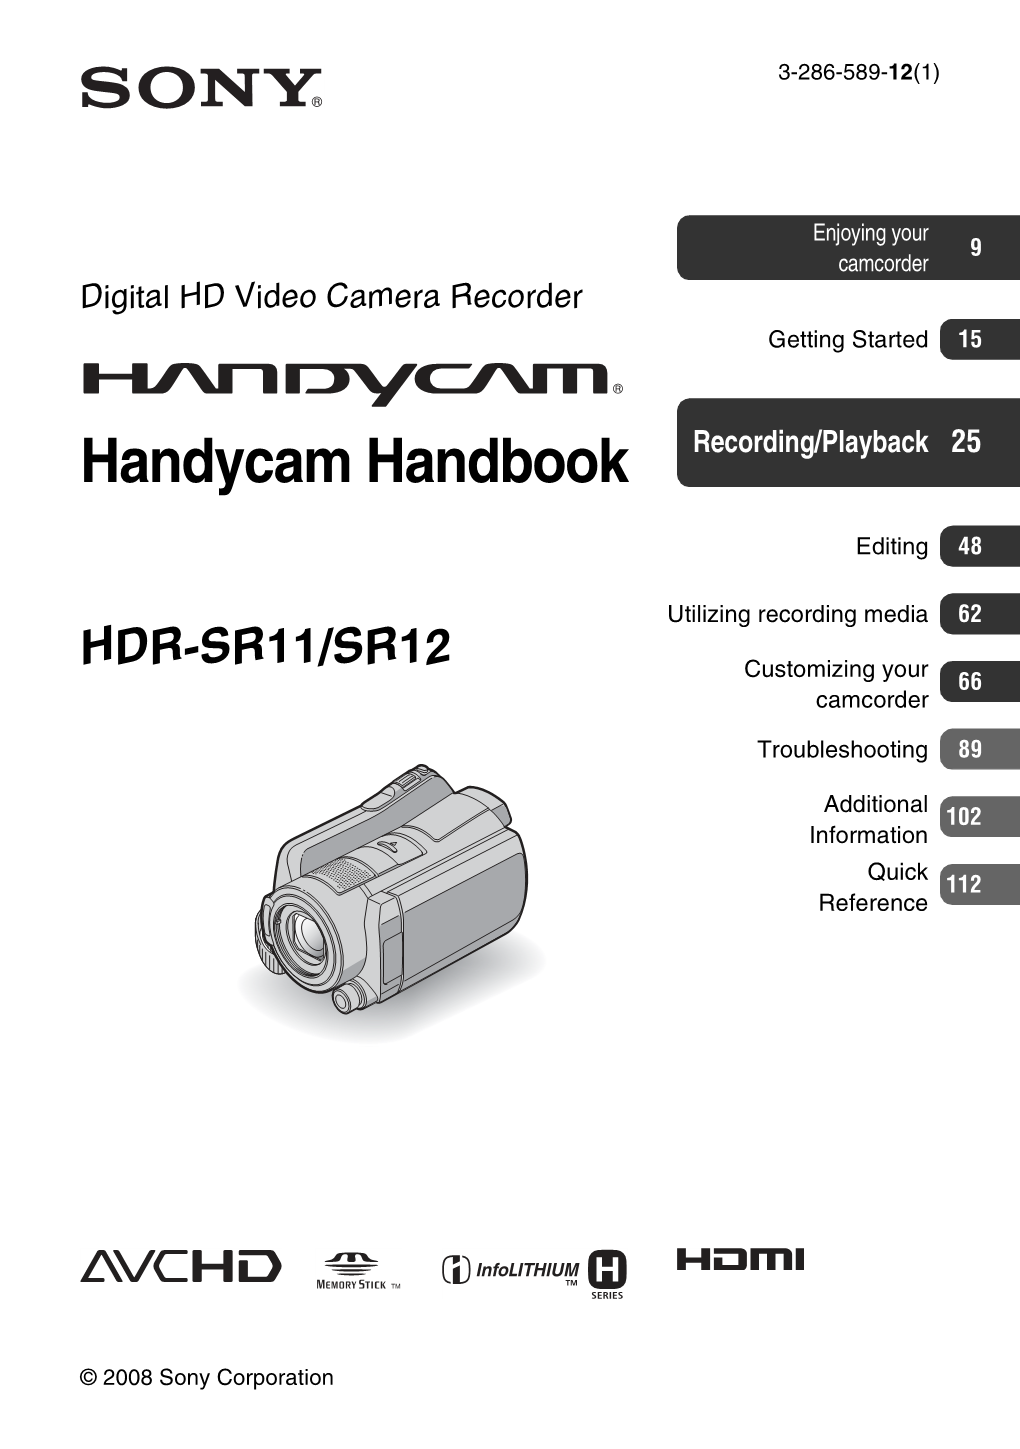 Handycam Handbook Recording/Playback 25